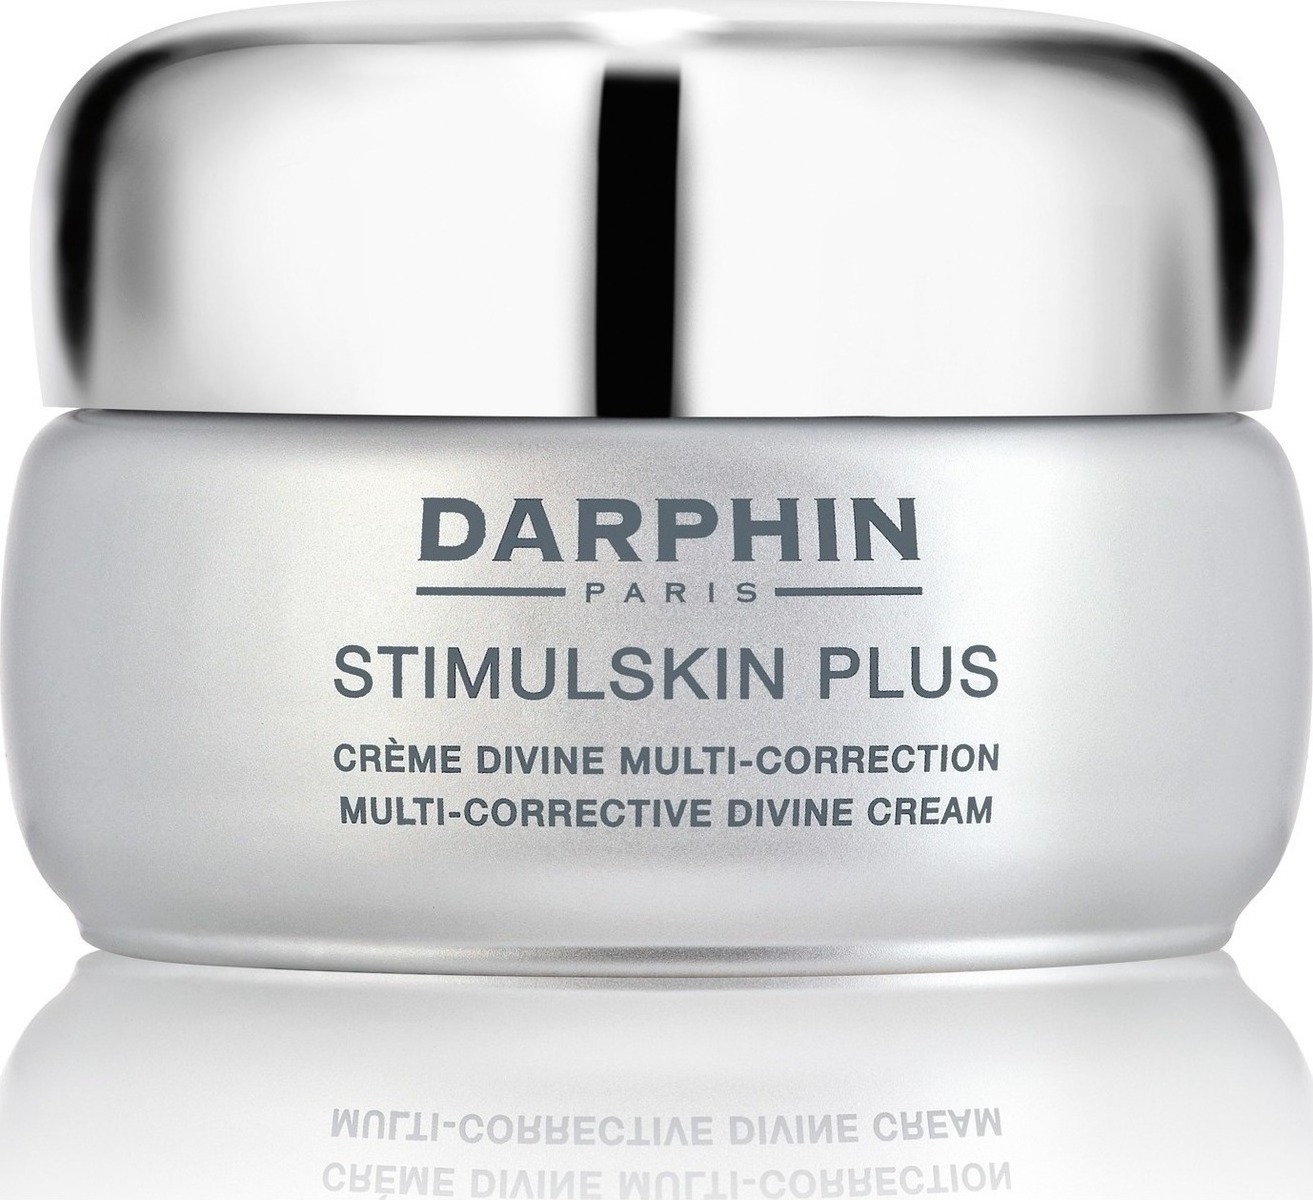 DARPHIN Stimulskin Plus Multi-Corrective Divine Cream Normal To Dry Skin 50ml